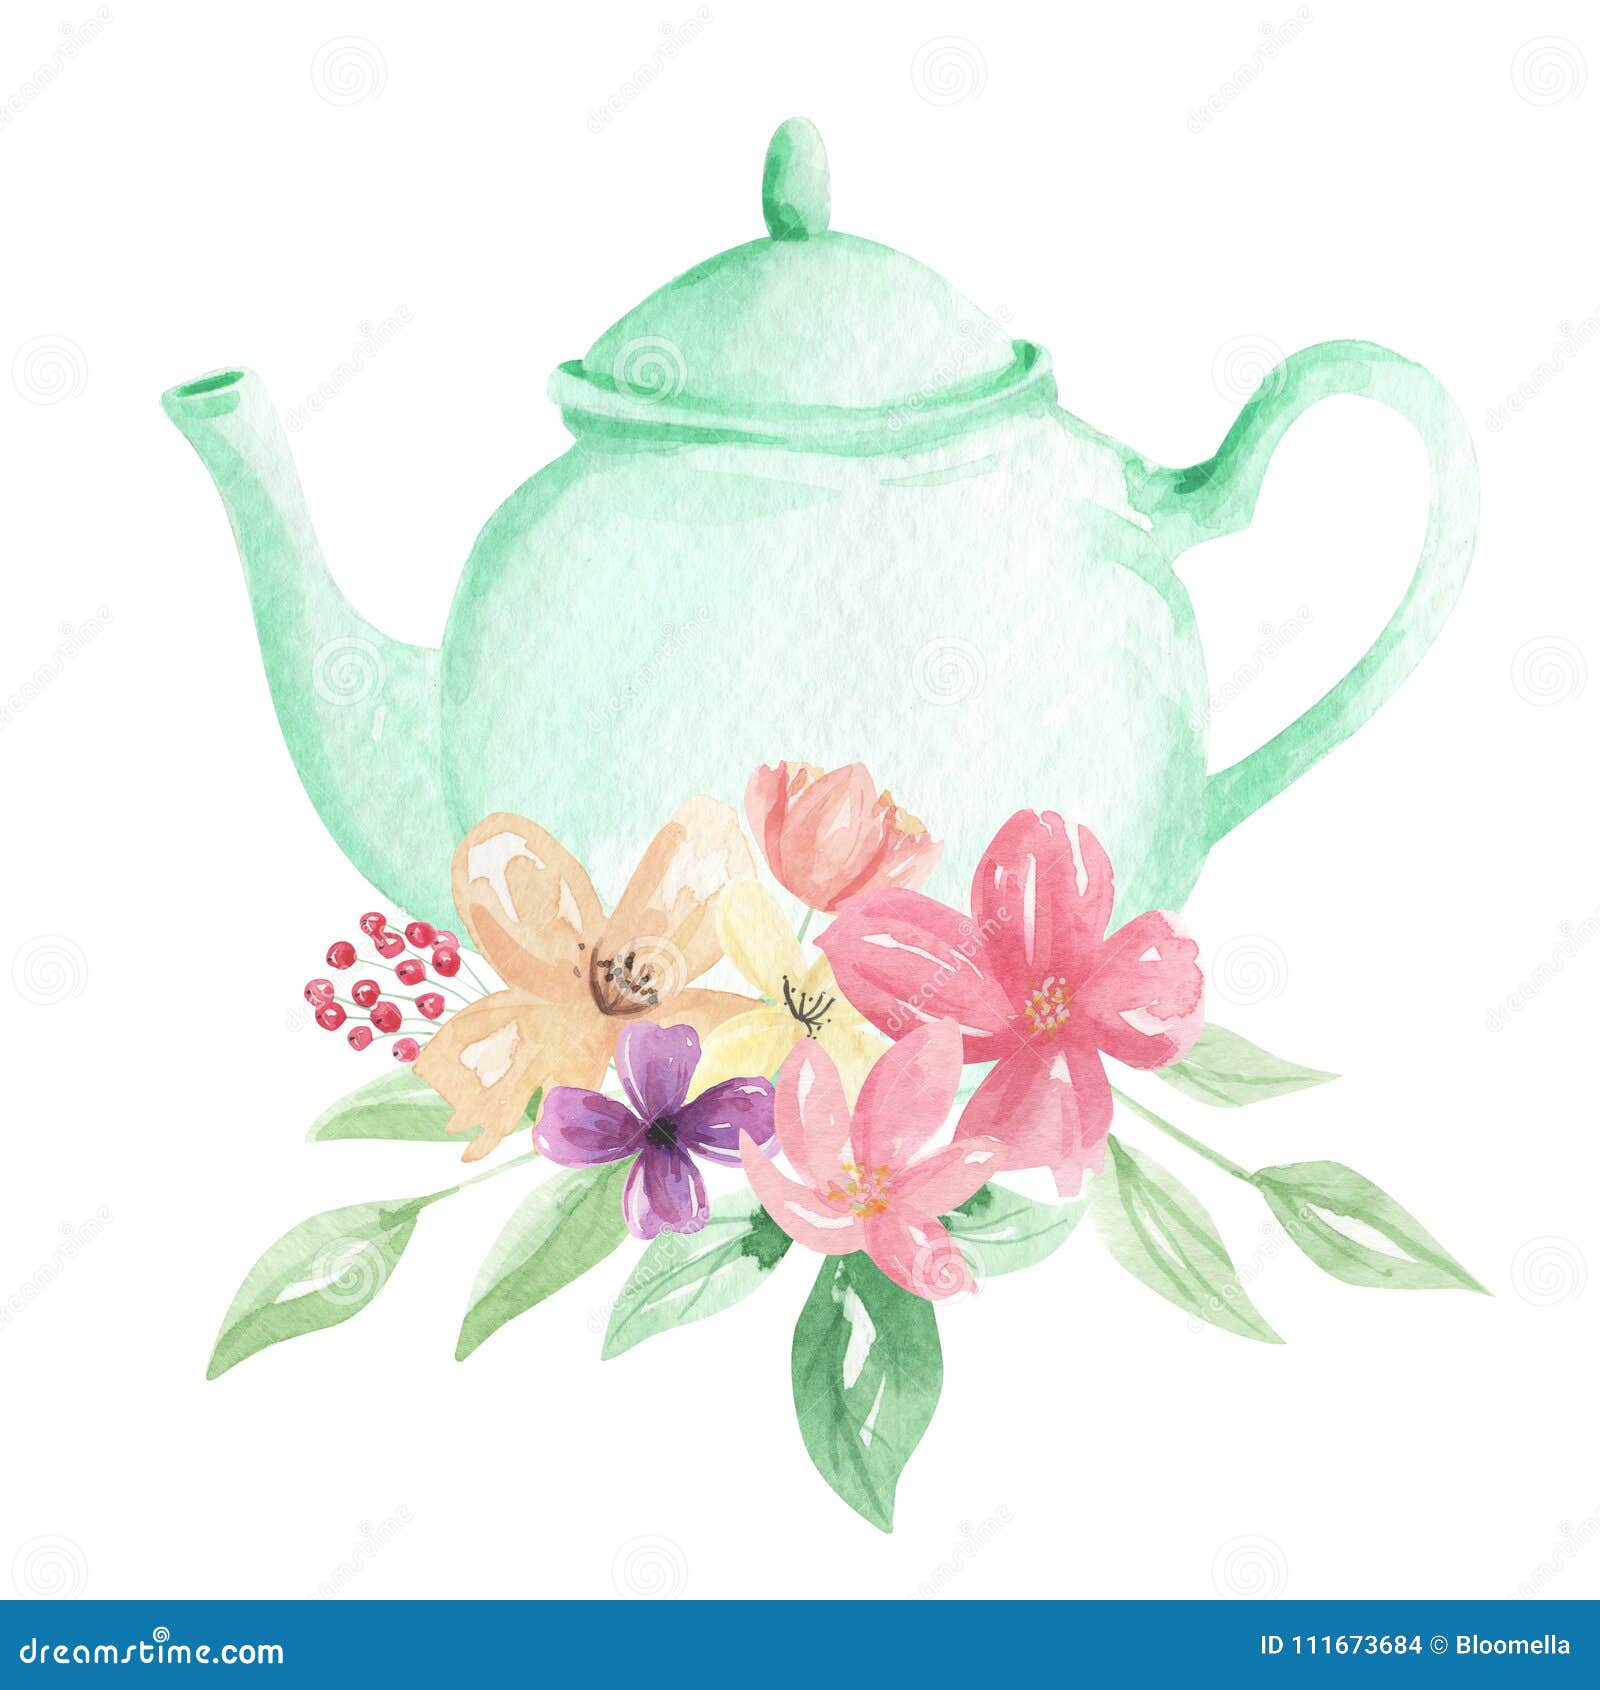 pastel mint teapot flowers watercolor foliage afternoon tea floral arrangement